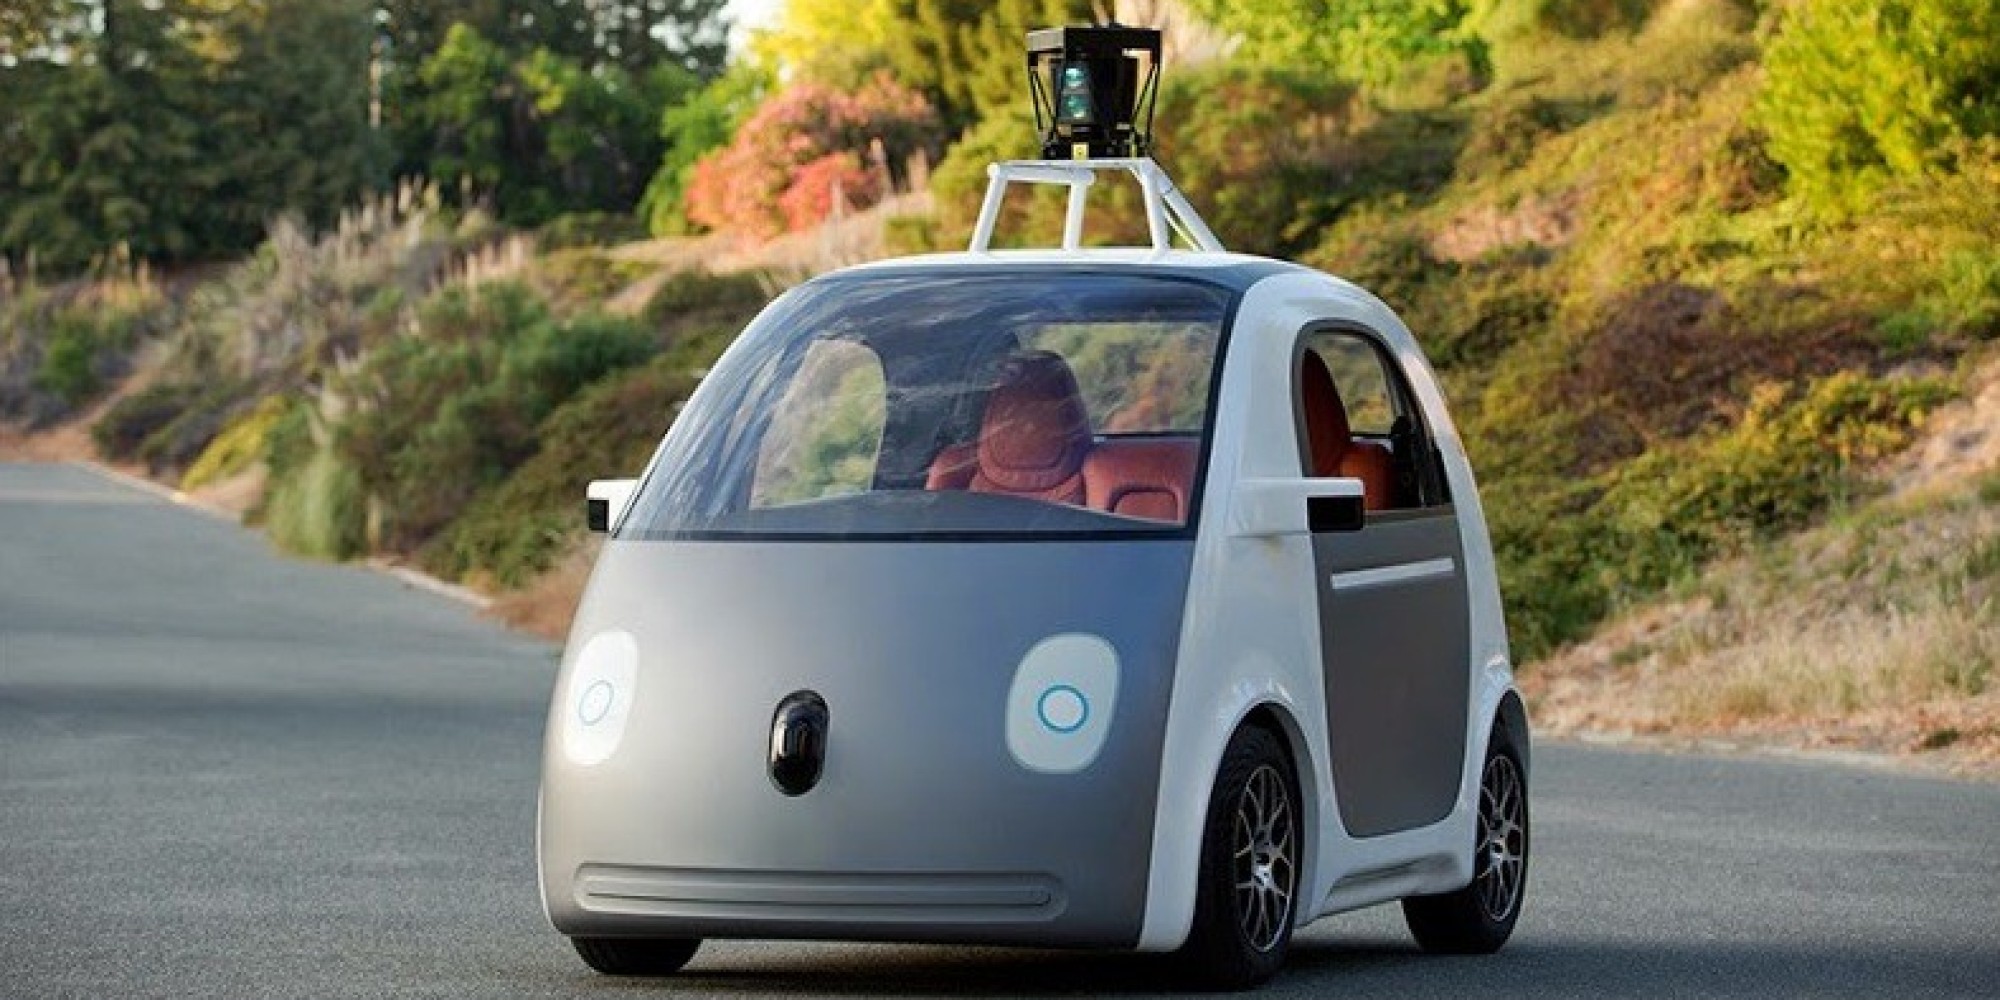 Google car